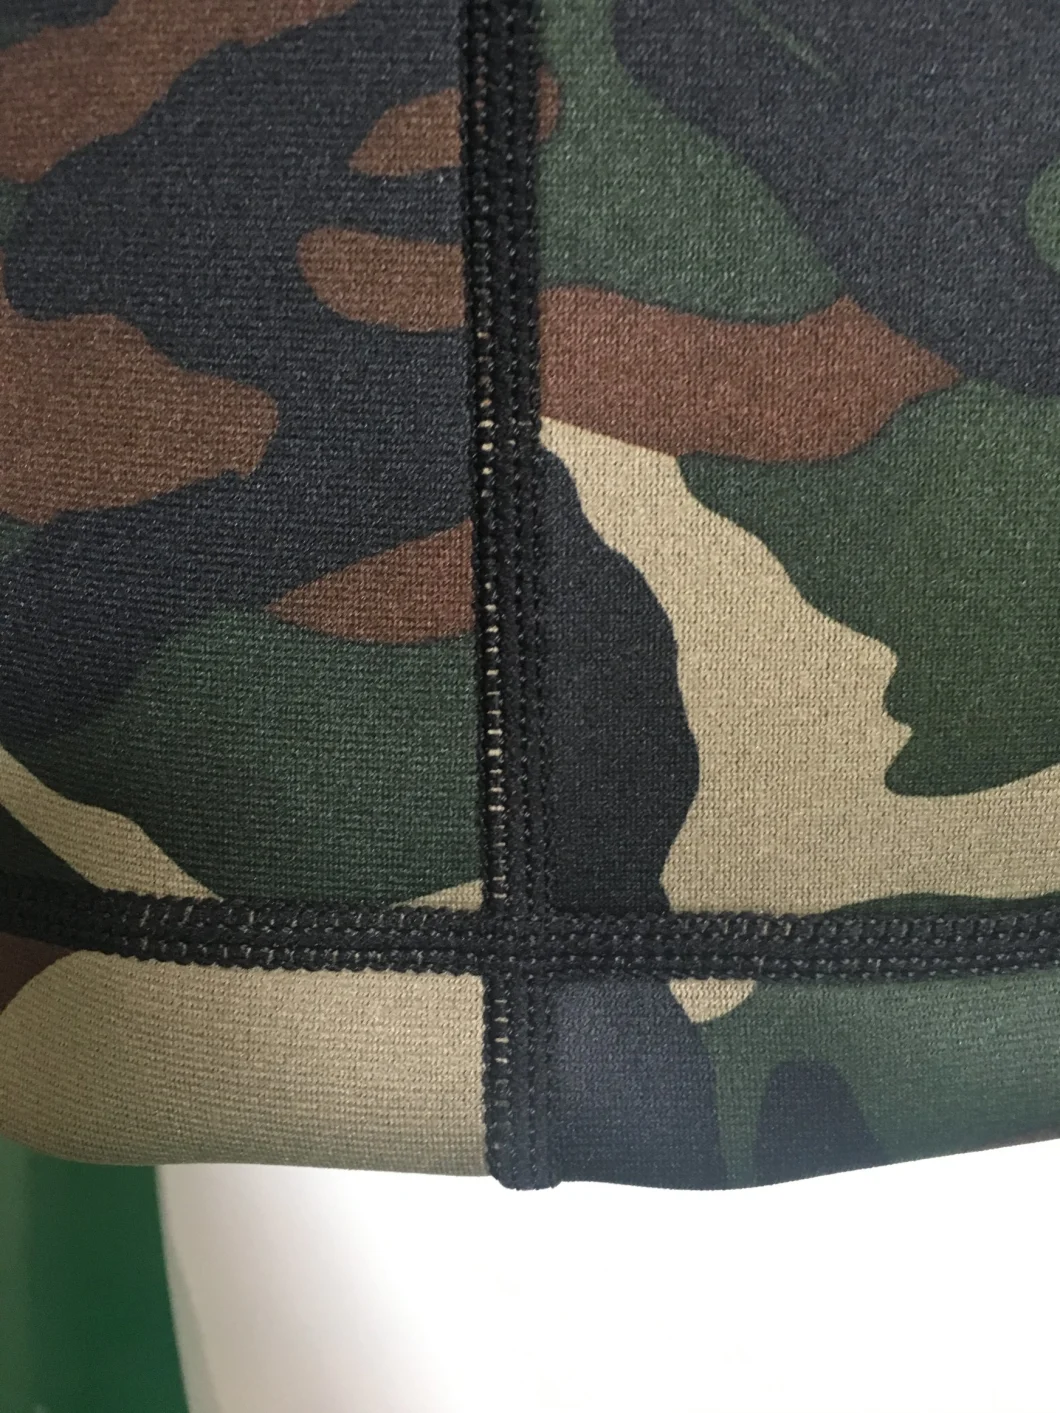 Men's Neoprene Camouflage Windbreaker Jacket for Sports Wear